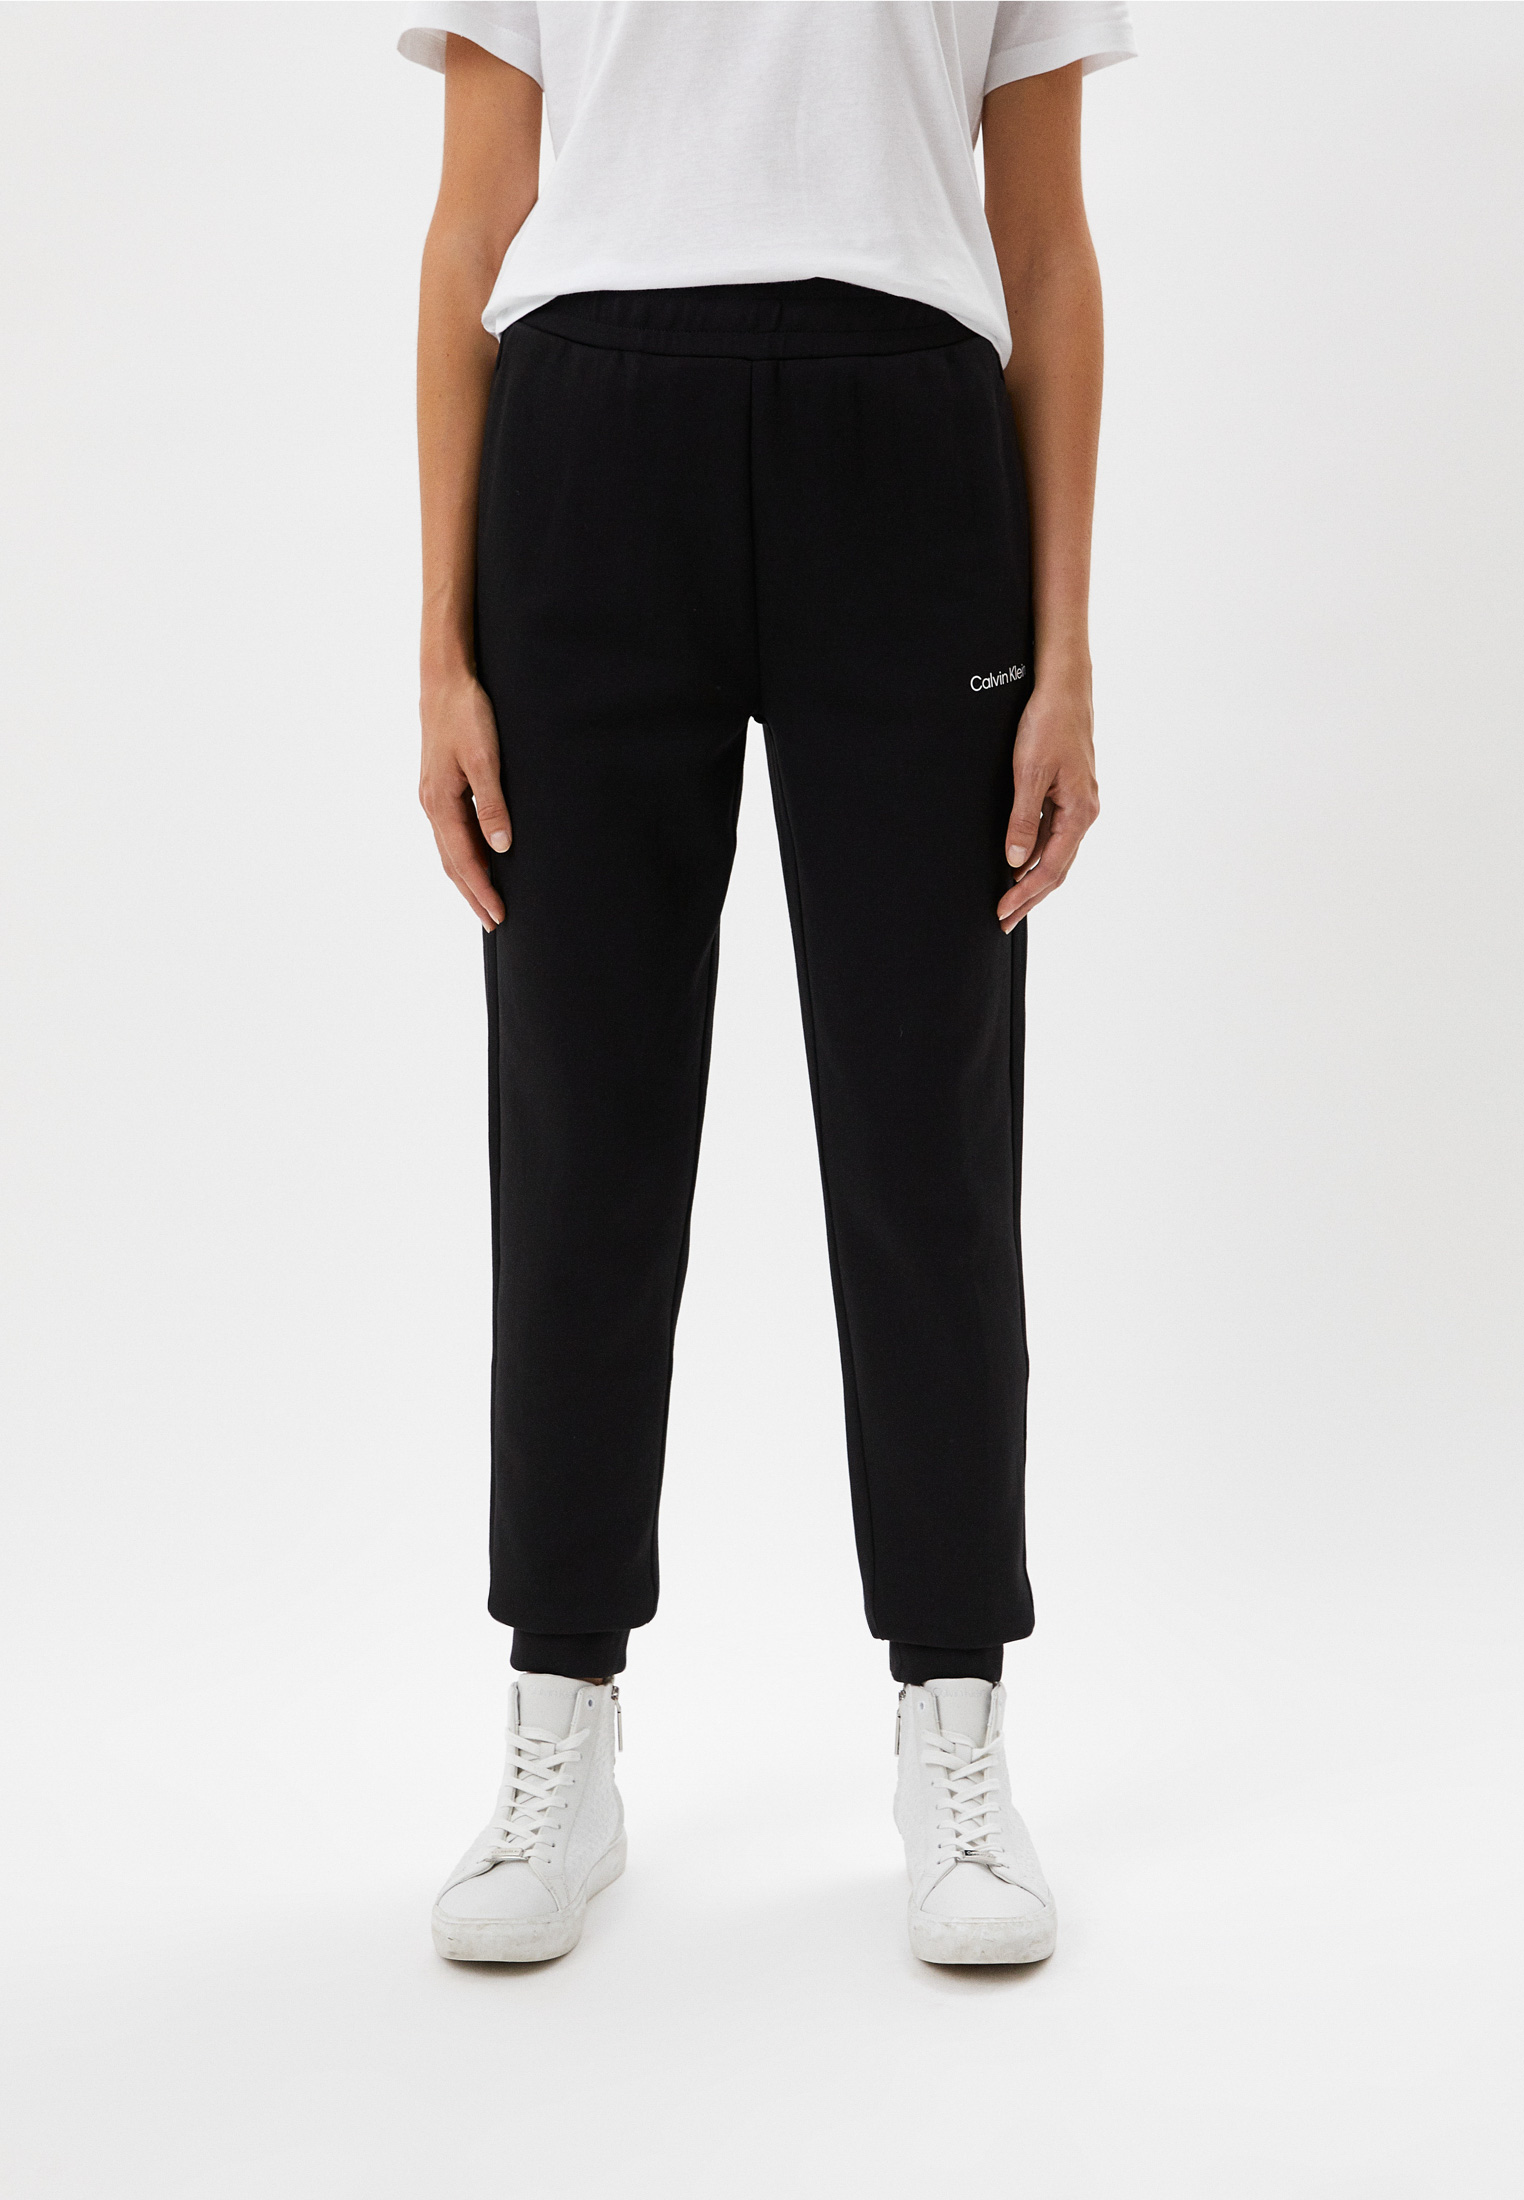 Женские спортивные брюки Calvin Klein (Кельвин Кляйн) K20K204424 купить за11490 руб.